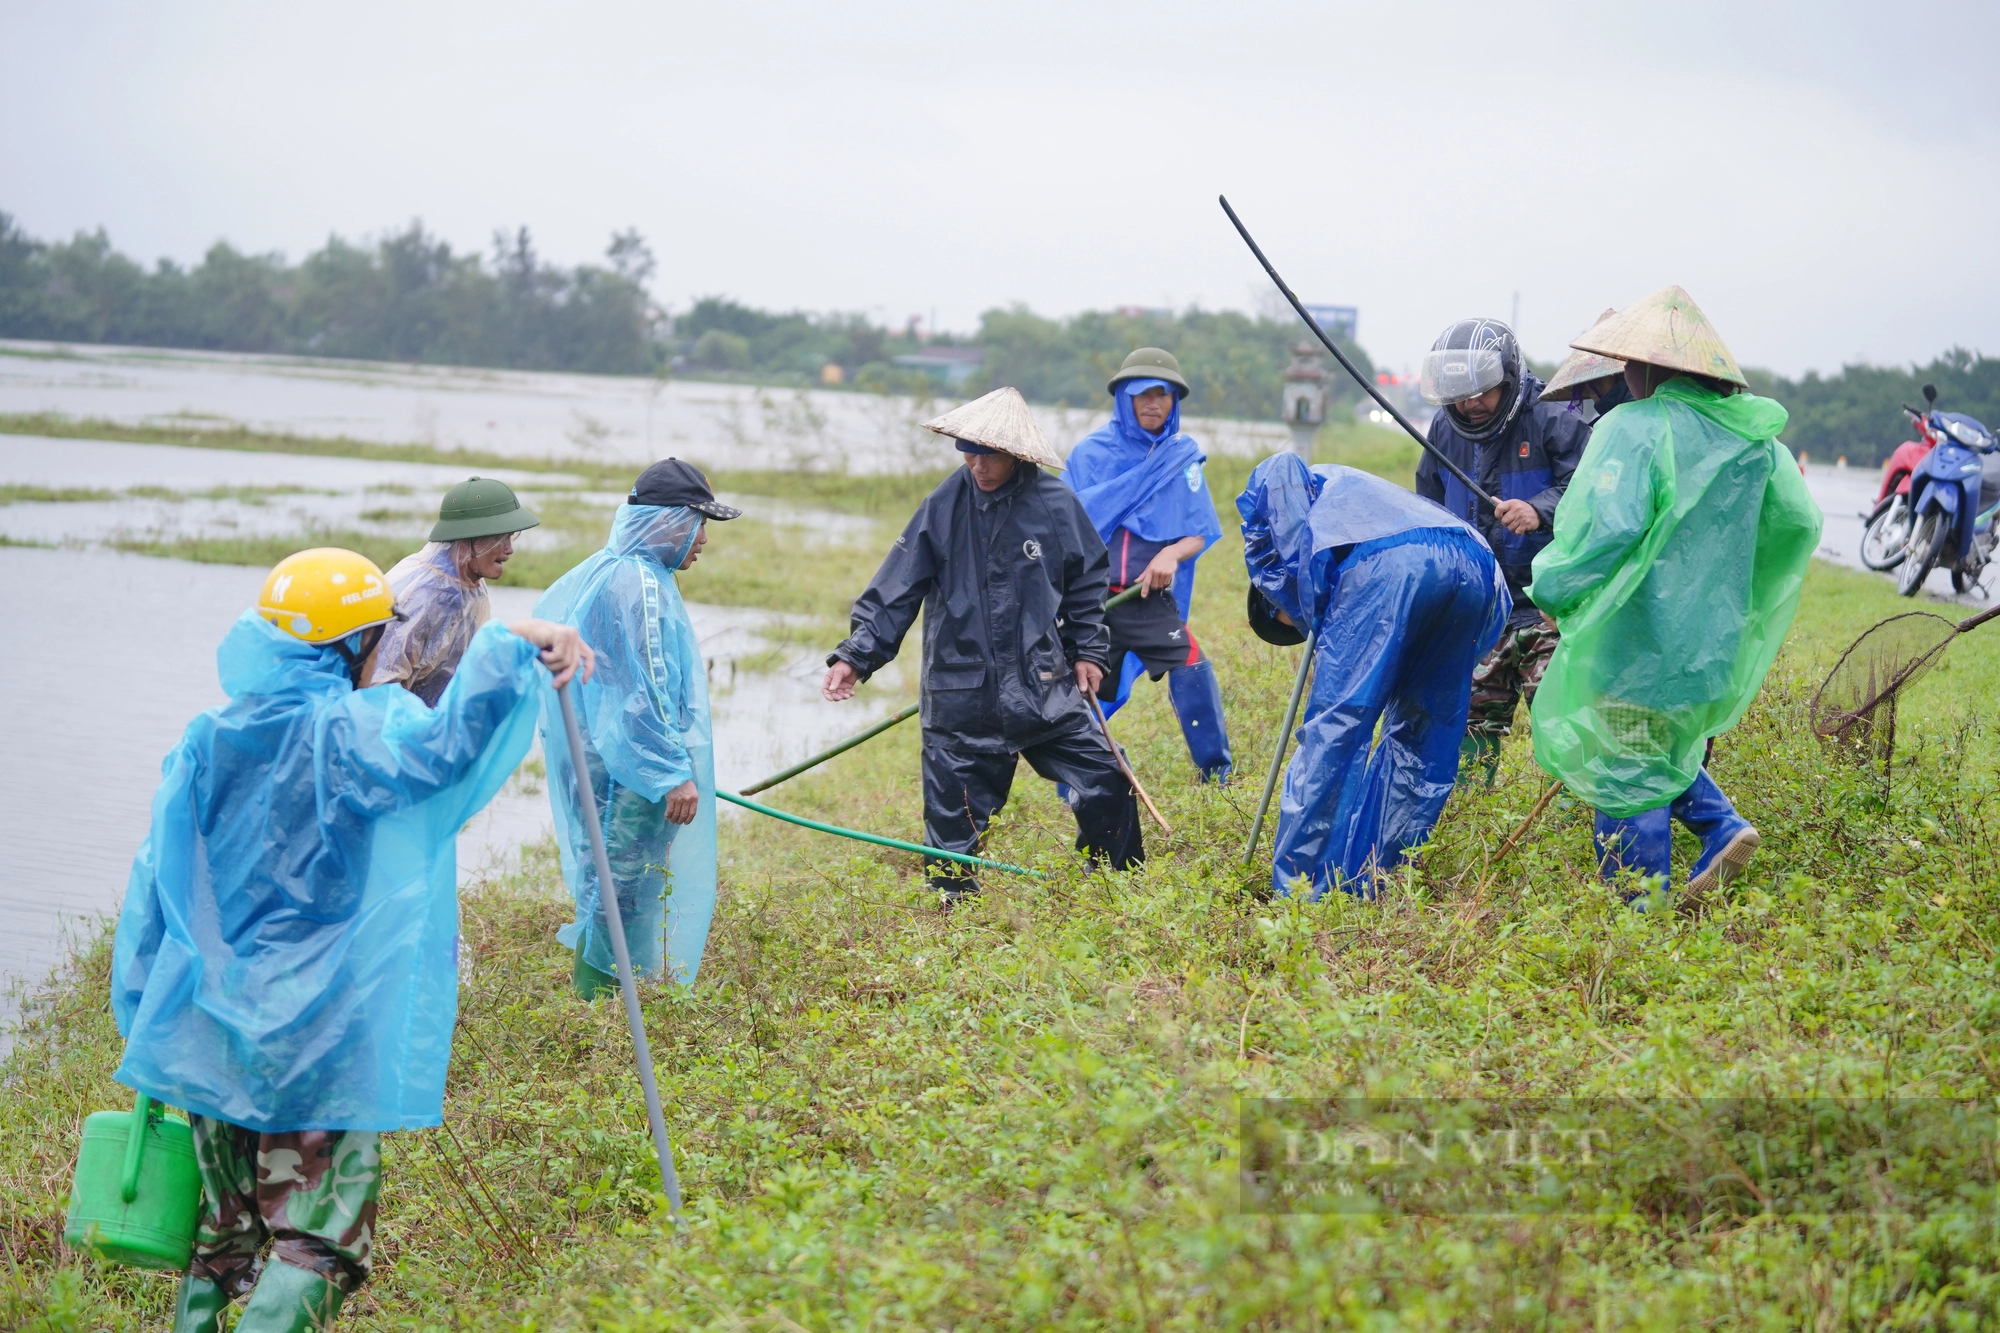 Cả làng ở Hà Tĩnh “đội mưa” cùng nhau lội nước đi bắt chuột bảo vệ mùa màng - Ảnh 15.